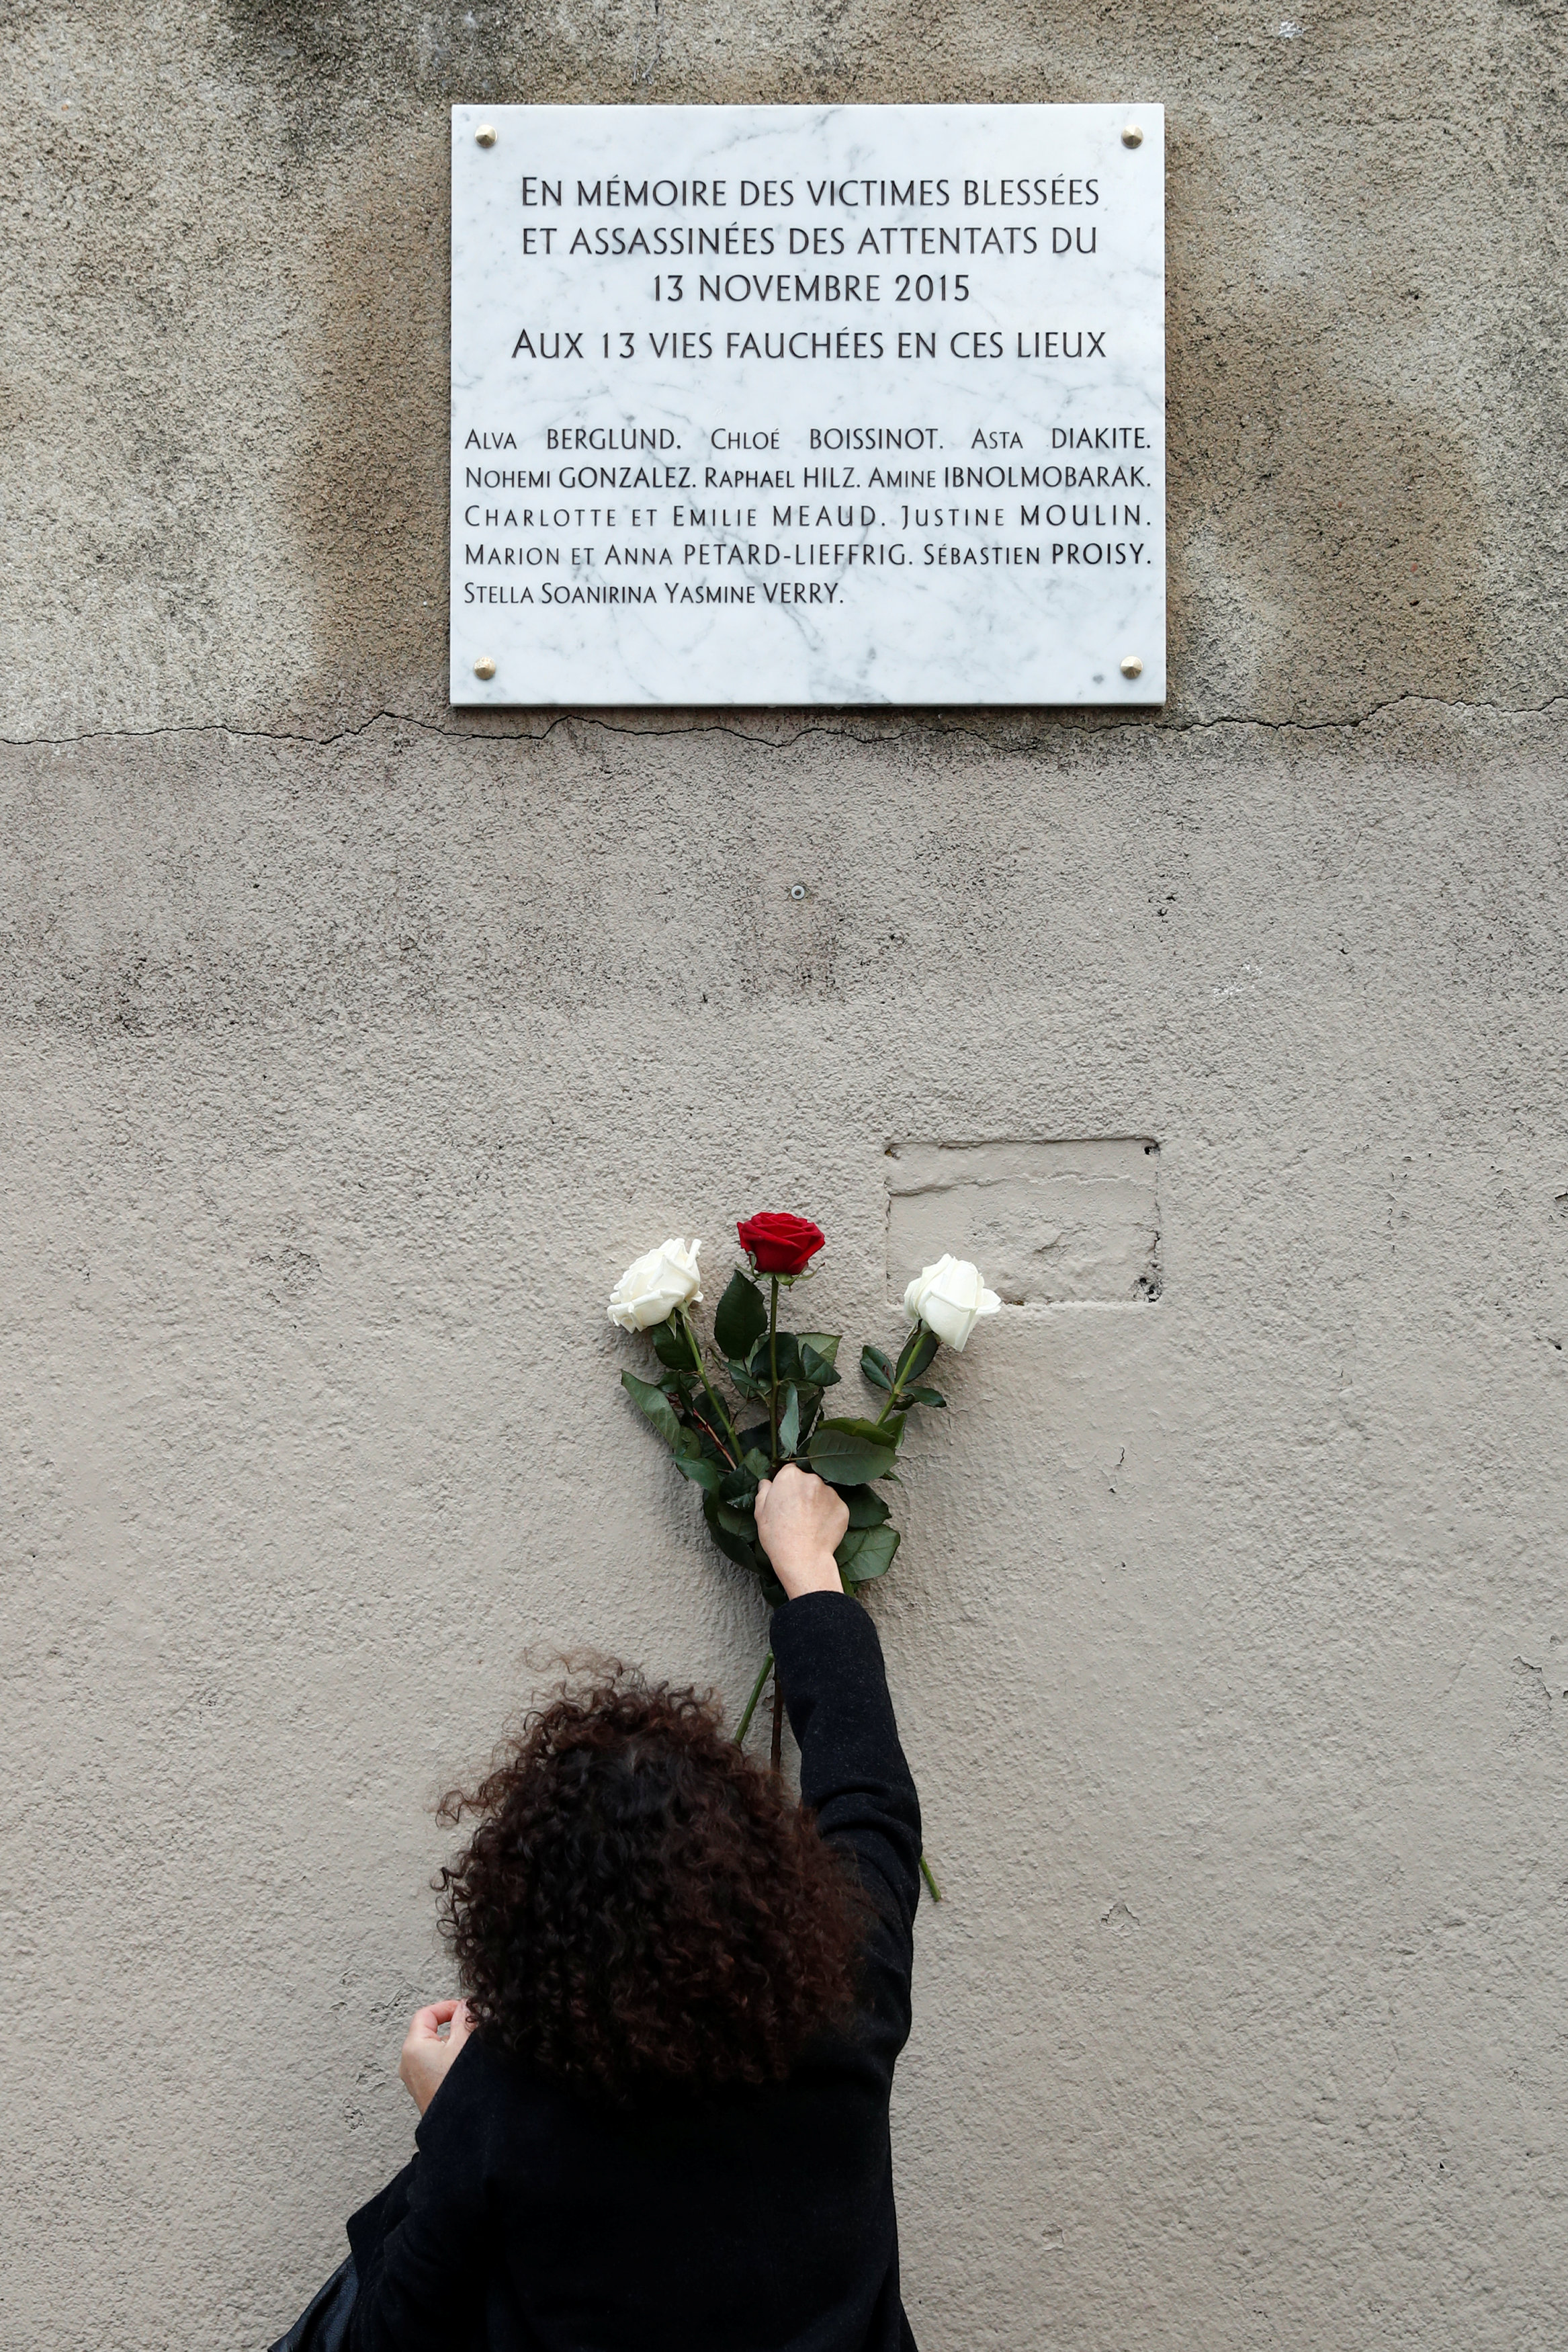 سيدة من أقارب الضحايا تضع حزمة من الزهور على النصب التذكارى